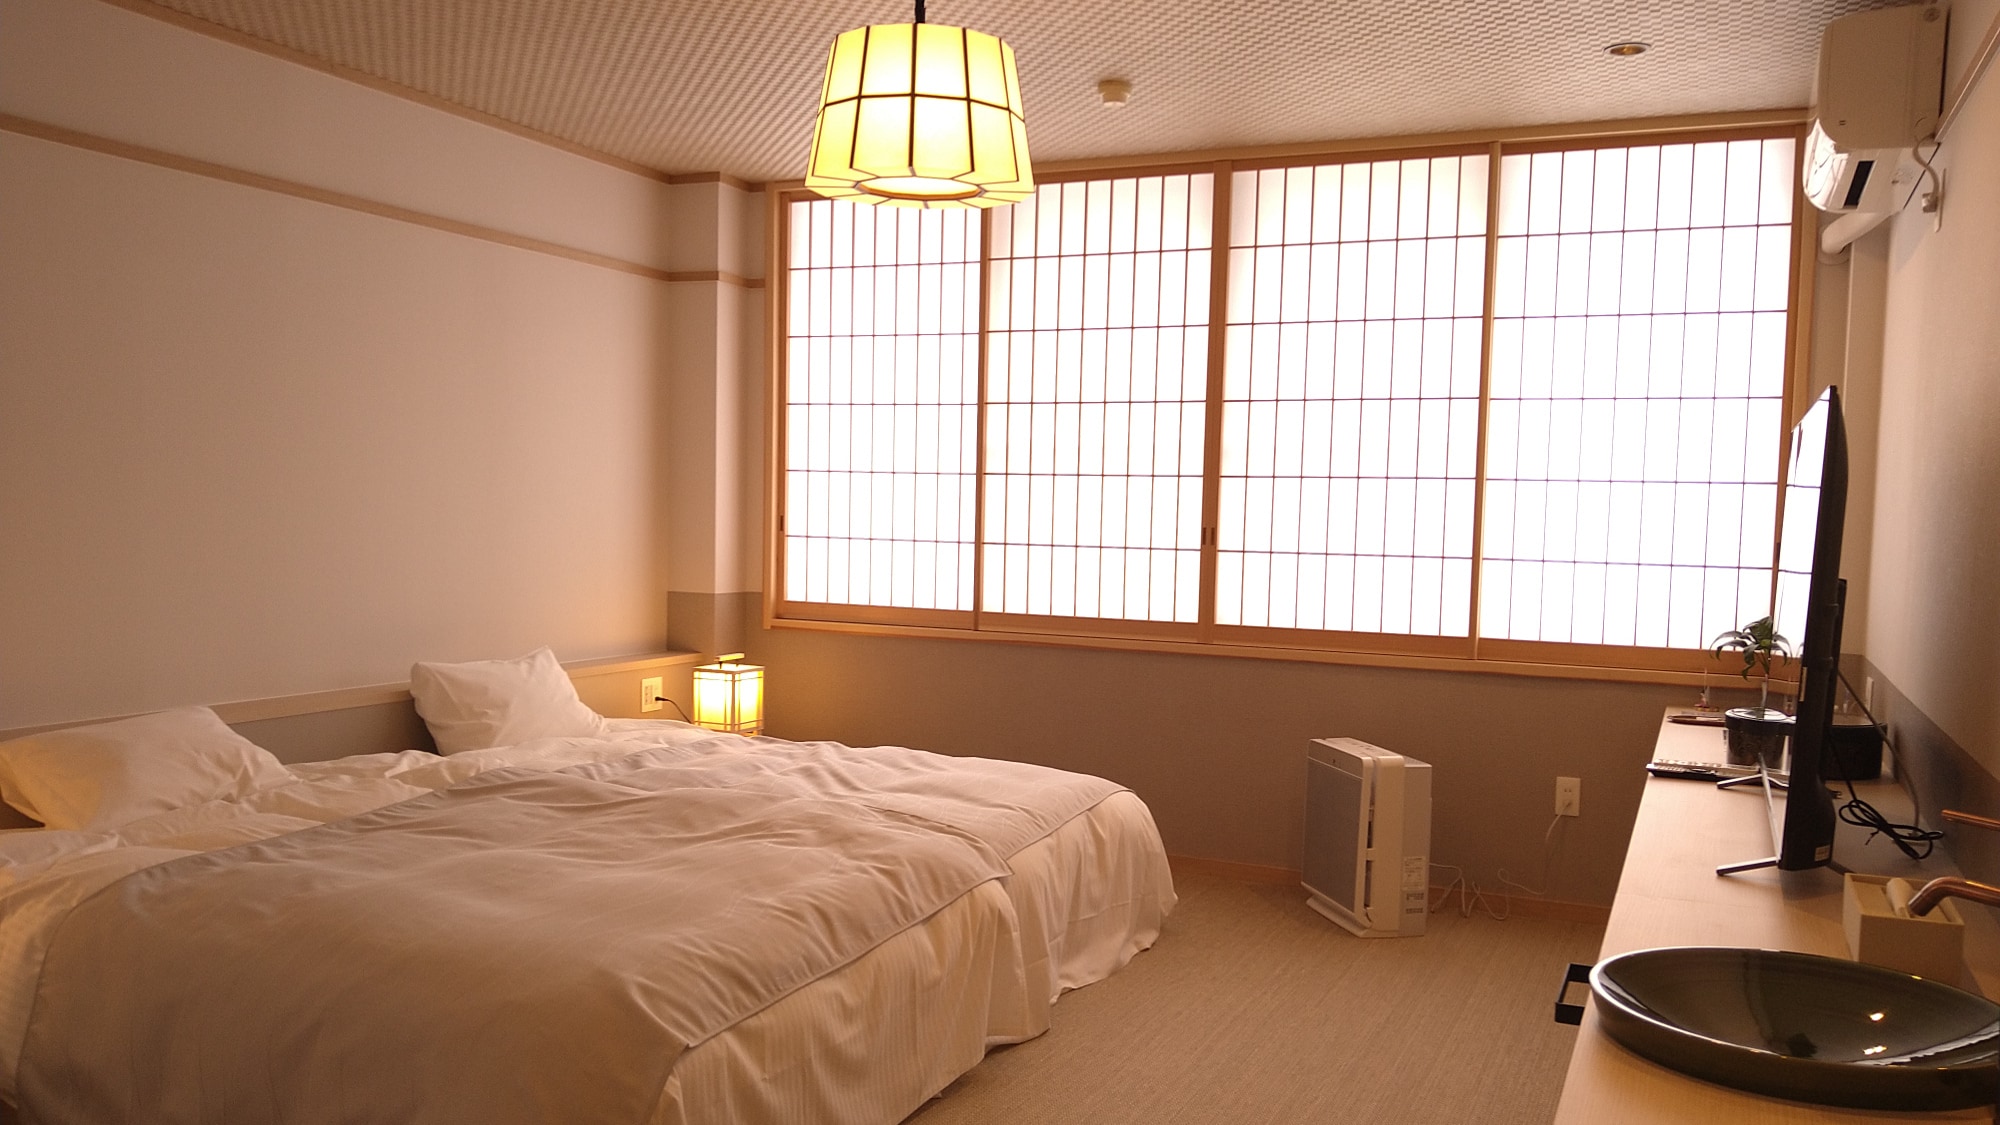 เปิดวันที่ 4 มีนาคม ของ Reiwa [ห้องเตียงคู่แบบญี่ปุ่นและตะวันตก] ห้อง "Akagi"